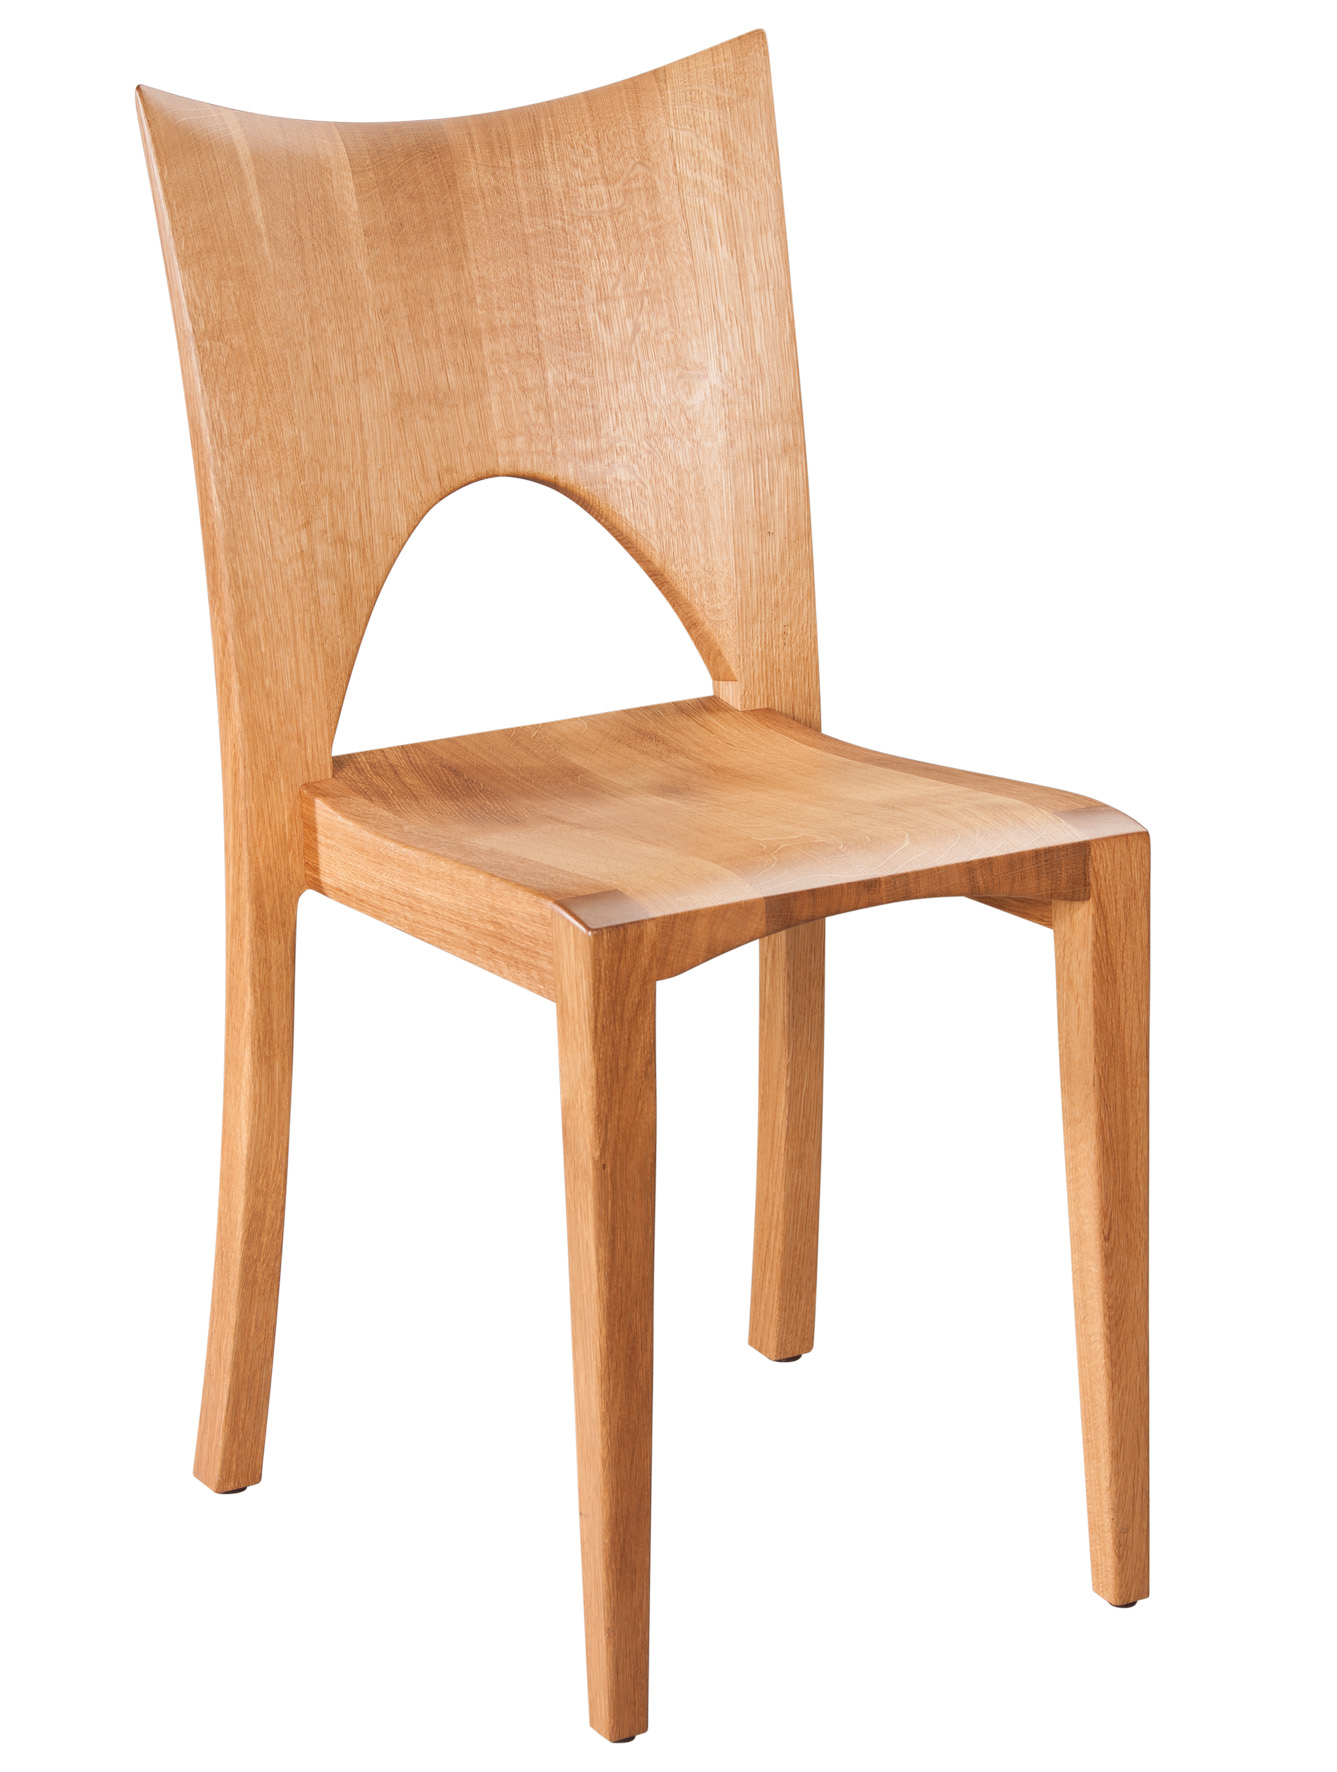 CARESSE BREITLEHNER Stuhl mit körpergerecht ausgeformtem Holzsitz